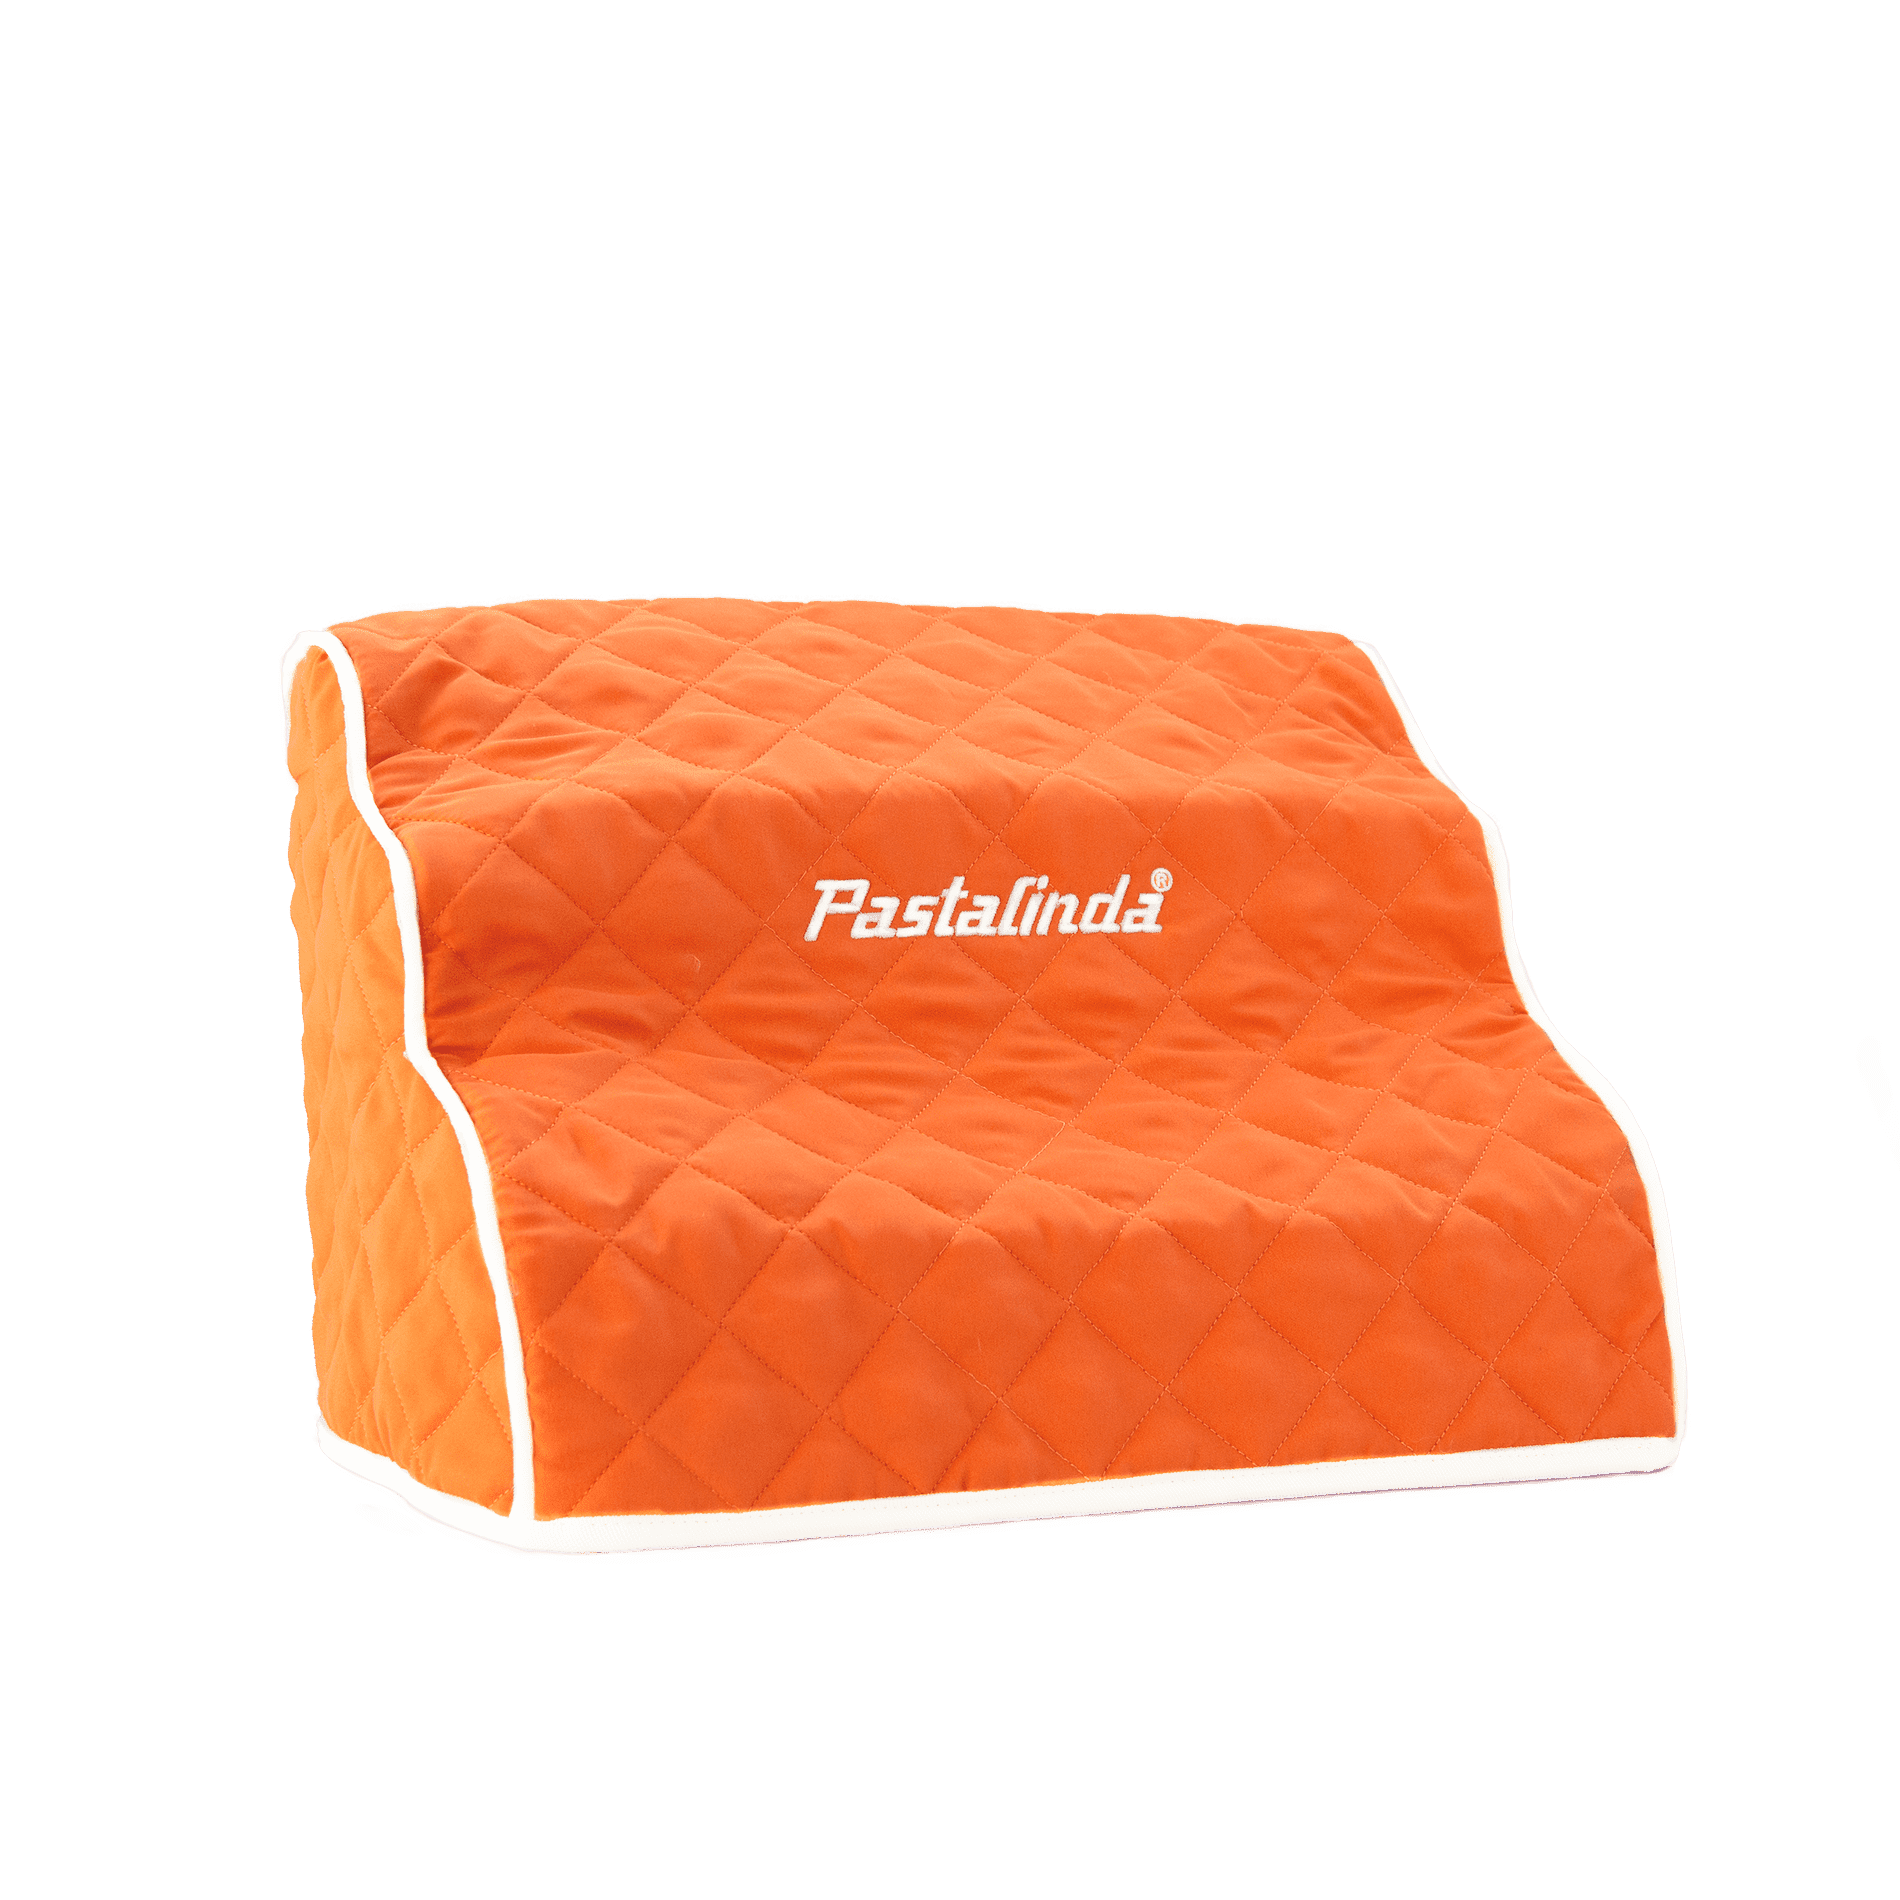 Cover for pasta maker Classic 260 - Orange - Pastalinda